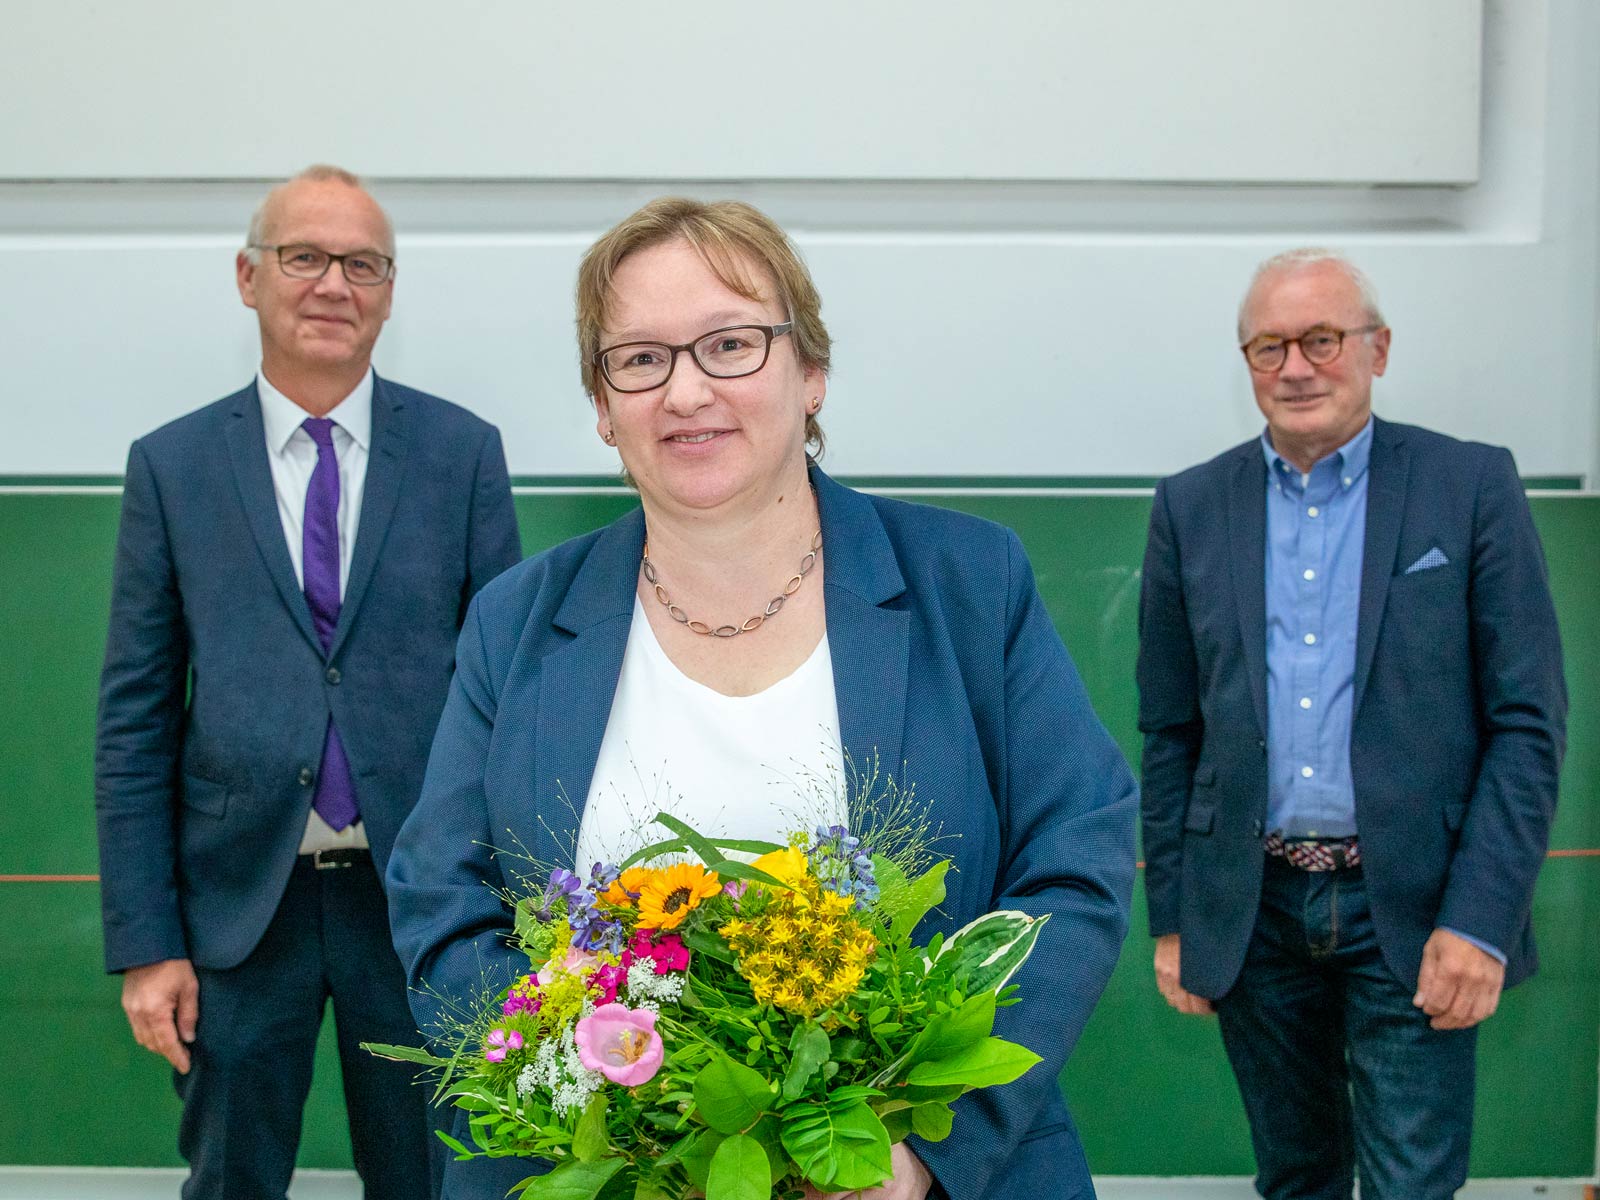 Frauke Mayer mit Blumenstrauß in den Händen. Hinter ihr stehen Rektor Bernd Scholz-Reiter und Altkanzler Martin Mehrtens.